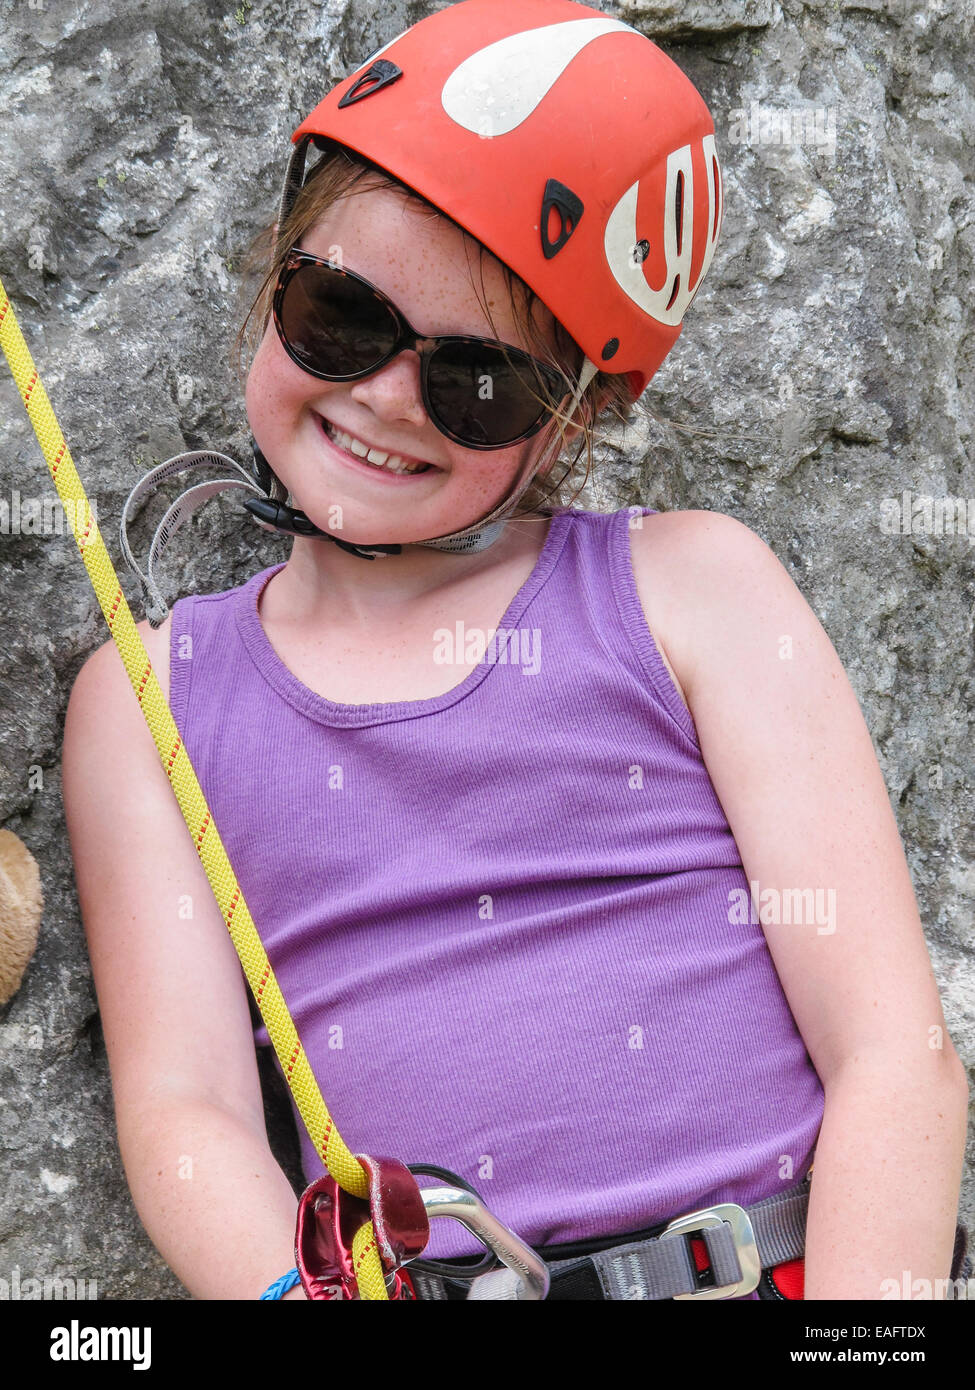 Smiling young girl wearing sunglasses et équipement d'escalade y compris un casque et l'attente du faisceau d'escalader une paroi rocheuse. Banque D'Images